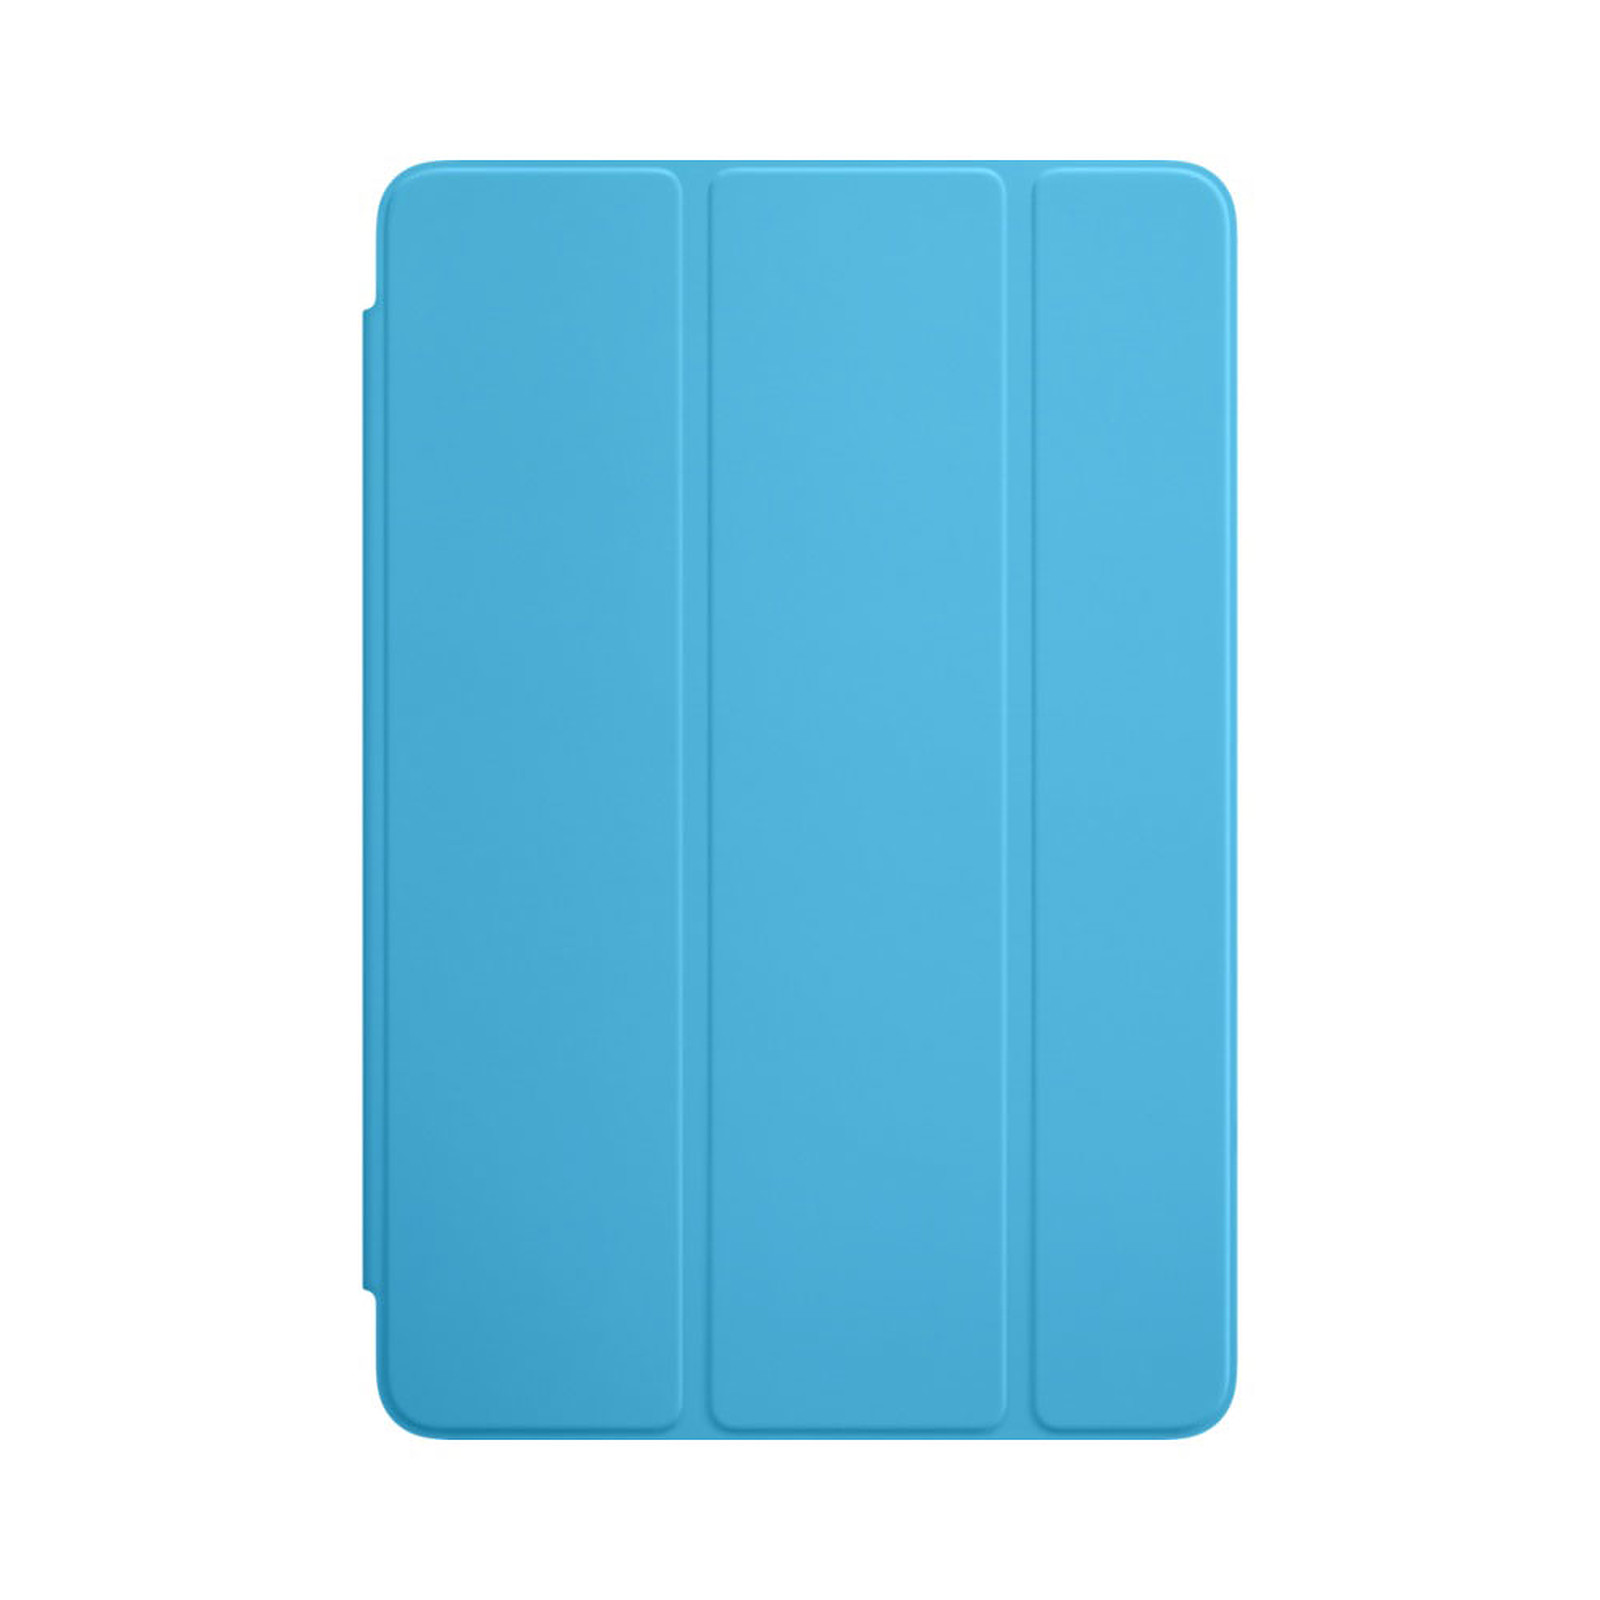 Apple iPad mini 4 Smart Cover Bleu - Etui tablette Apple